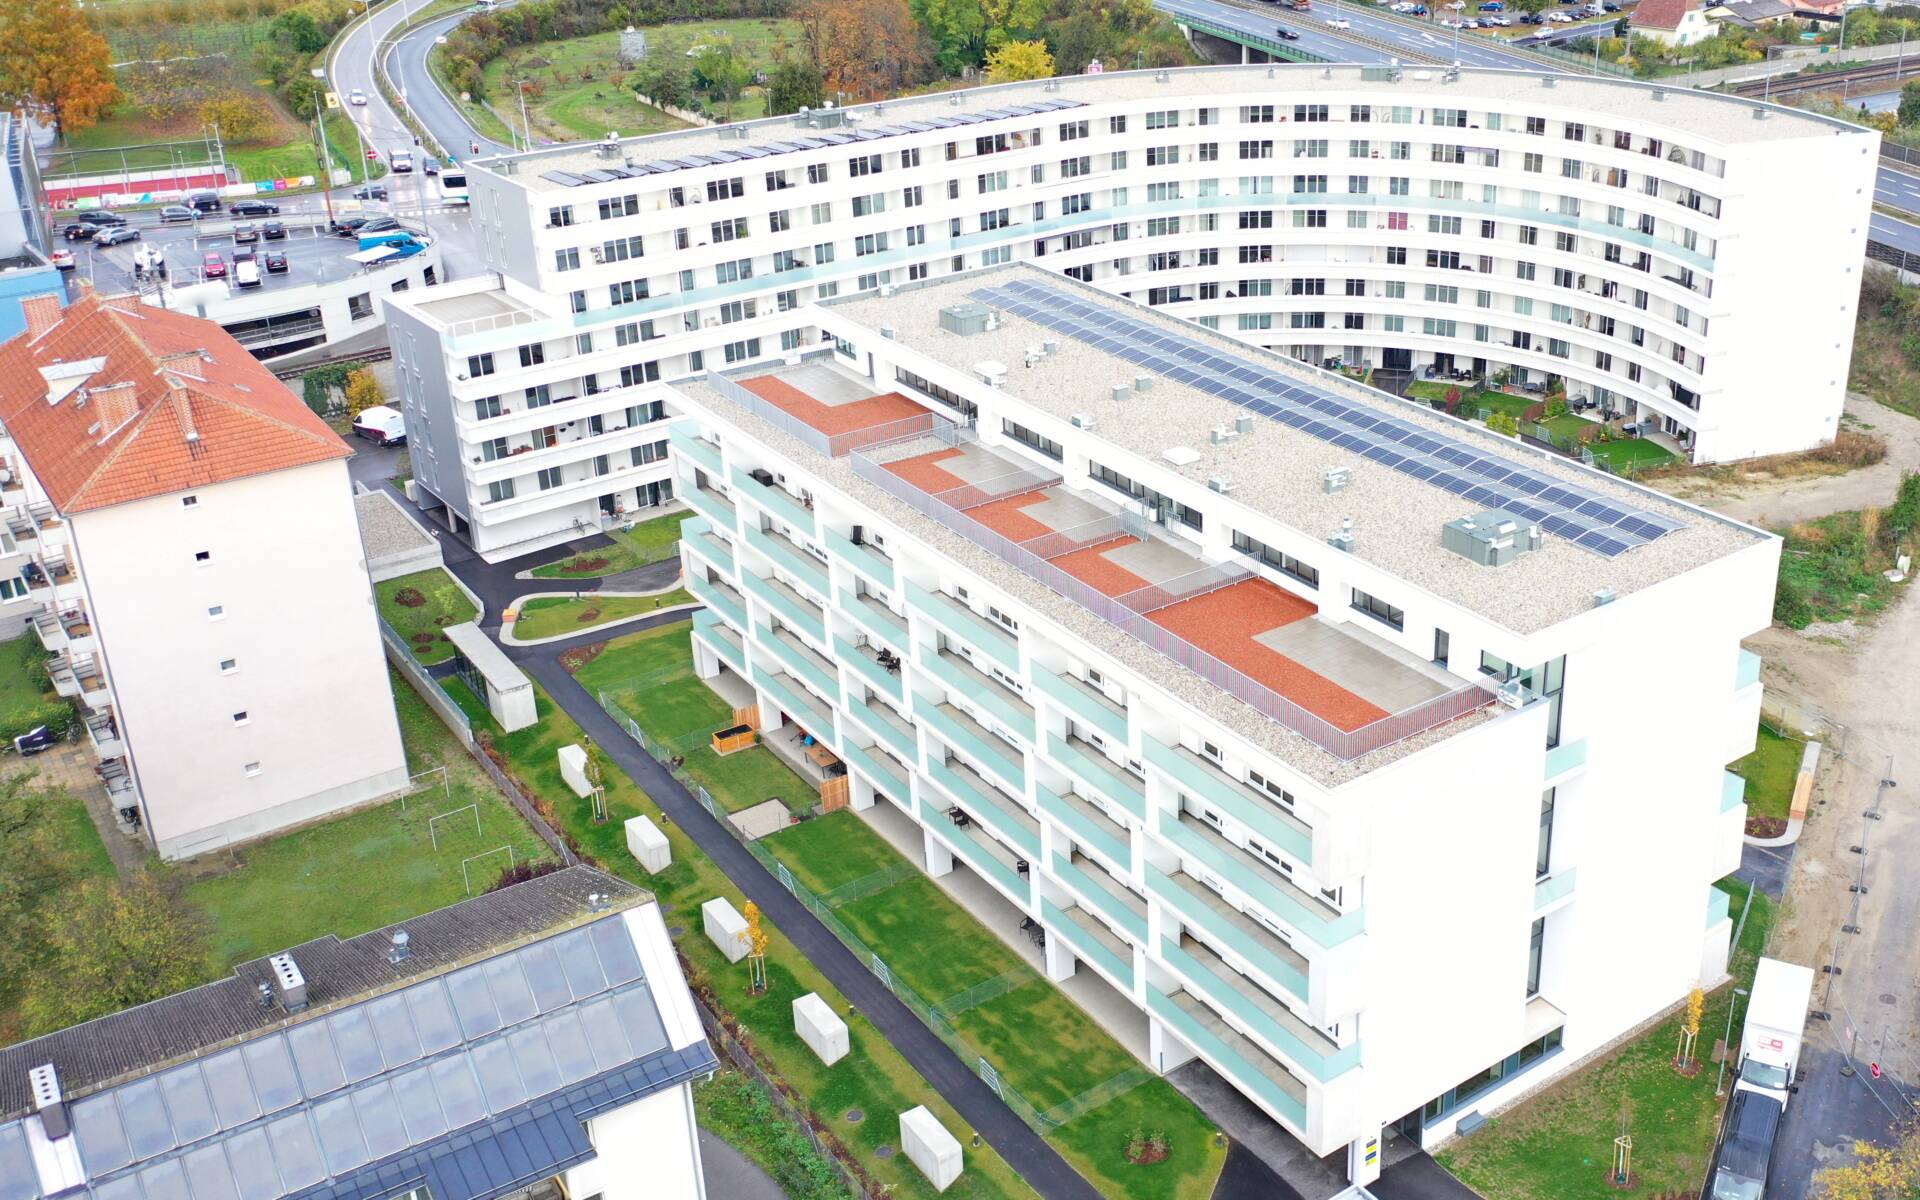 Neubau der Wohnhausanlage Weinzierl Xlll B in Krems durch Bauunternehmen Schubrig Krems.